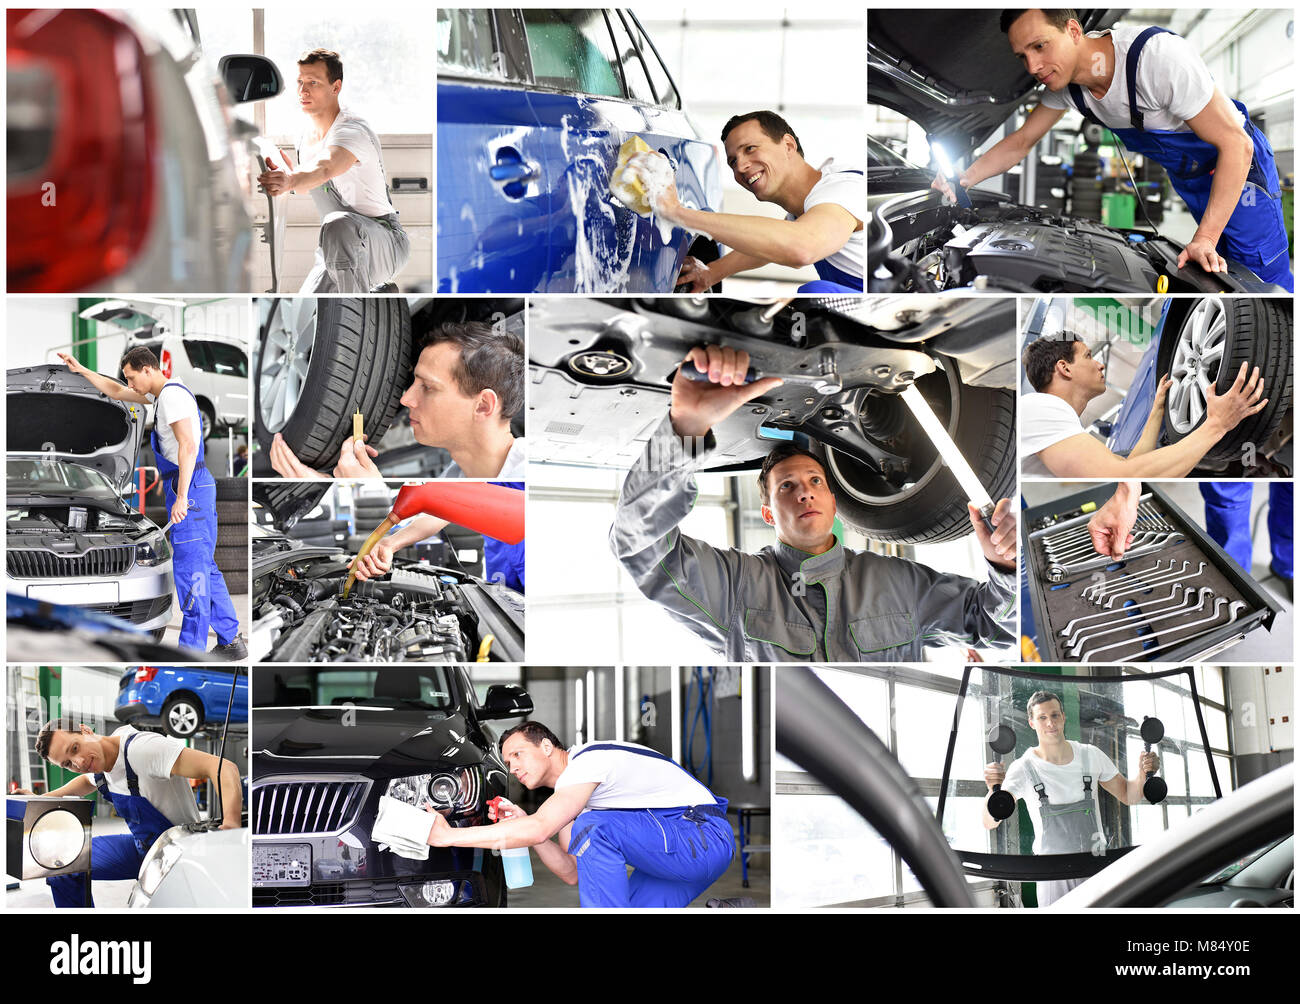 Werkstatt: mechanische Reparaturen Auto, Waschmaschine und Service in der Garage - Arbeiter Auto reinigt - Collage mit verschiedenen Motiven Stockfoto